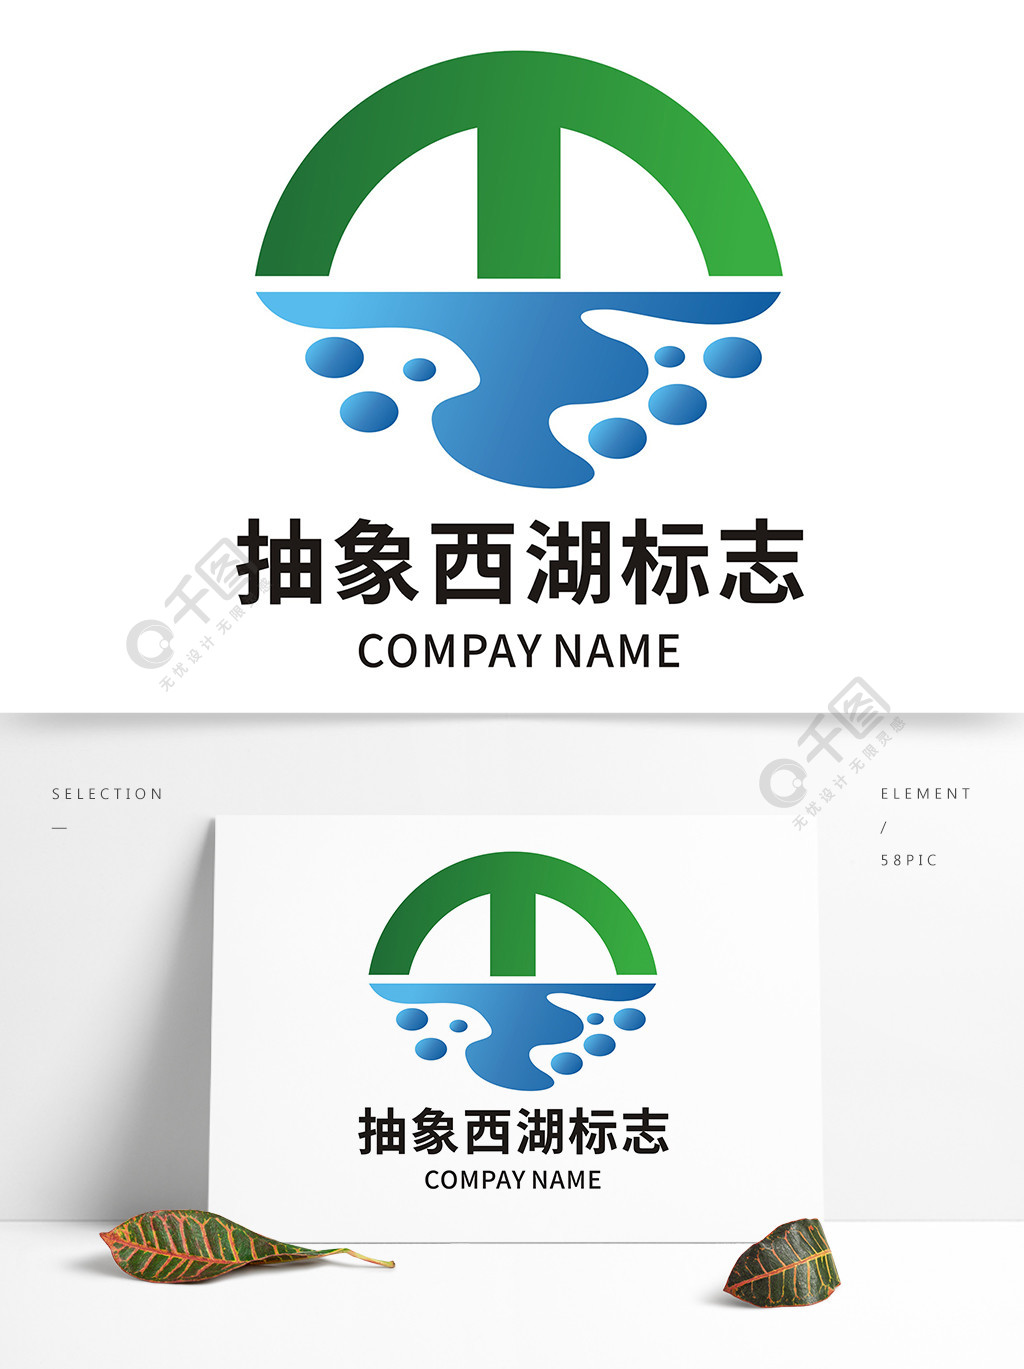 惠州西湖logo图片2年前发布